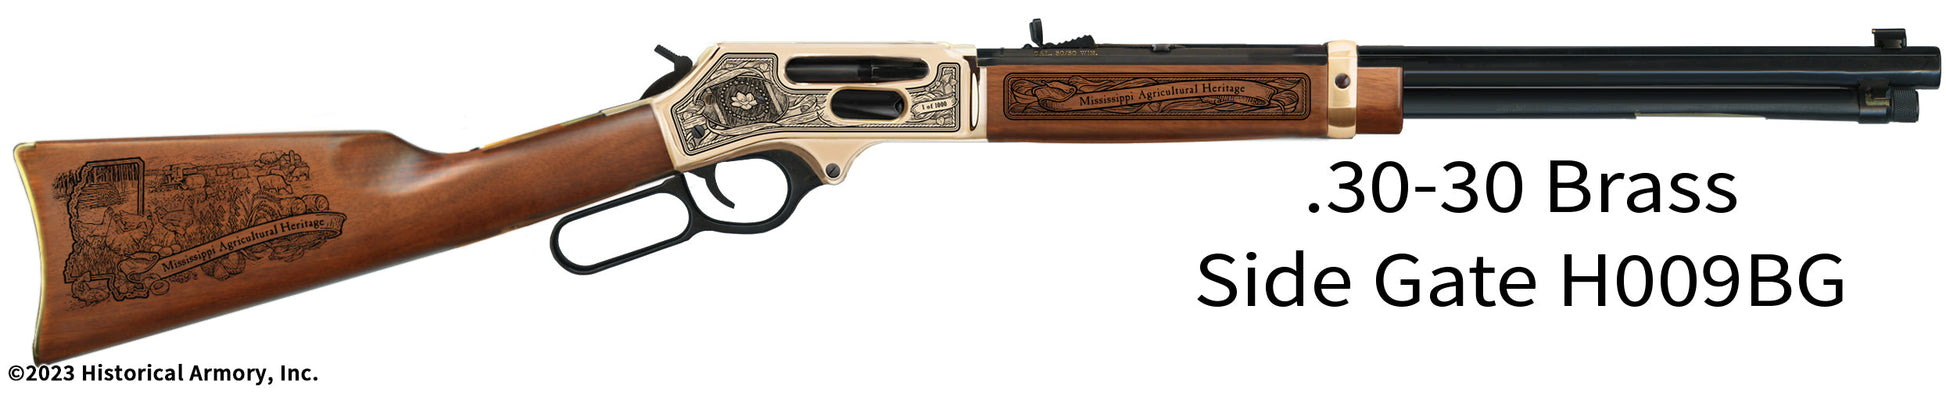 Mississippi Agricultural Heritage Engraved Henry .30-30 Brass Side Gate H009BG Rifle